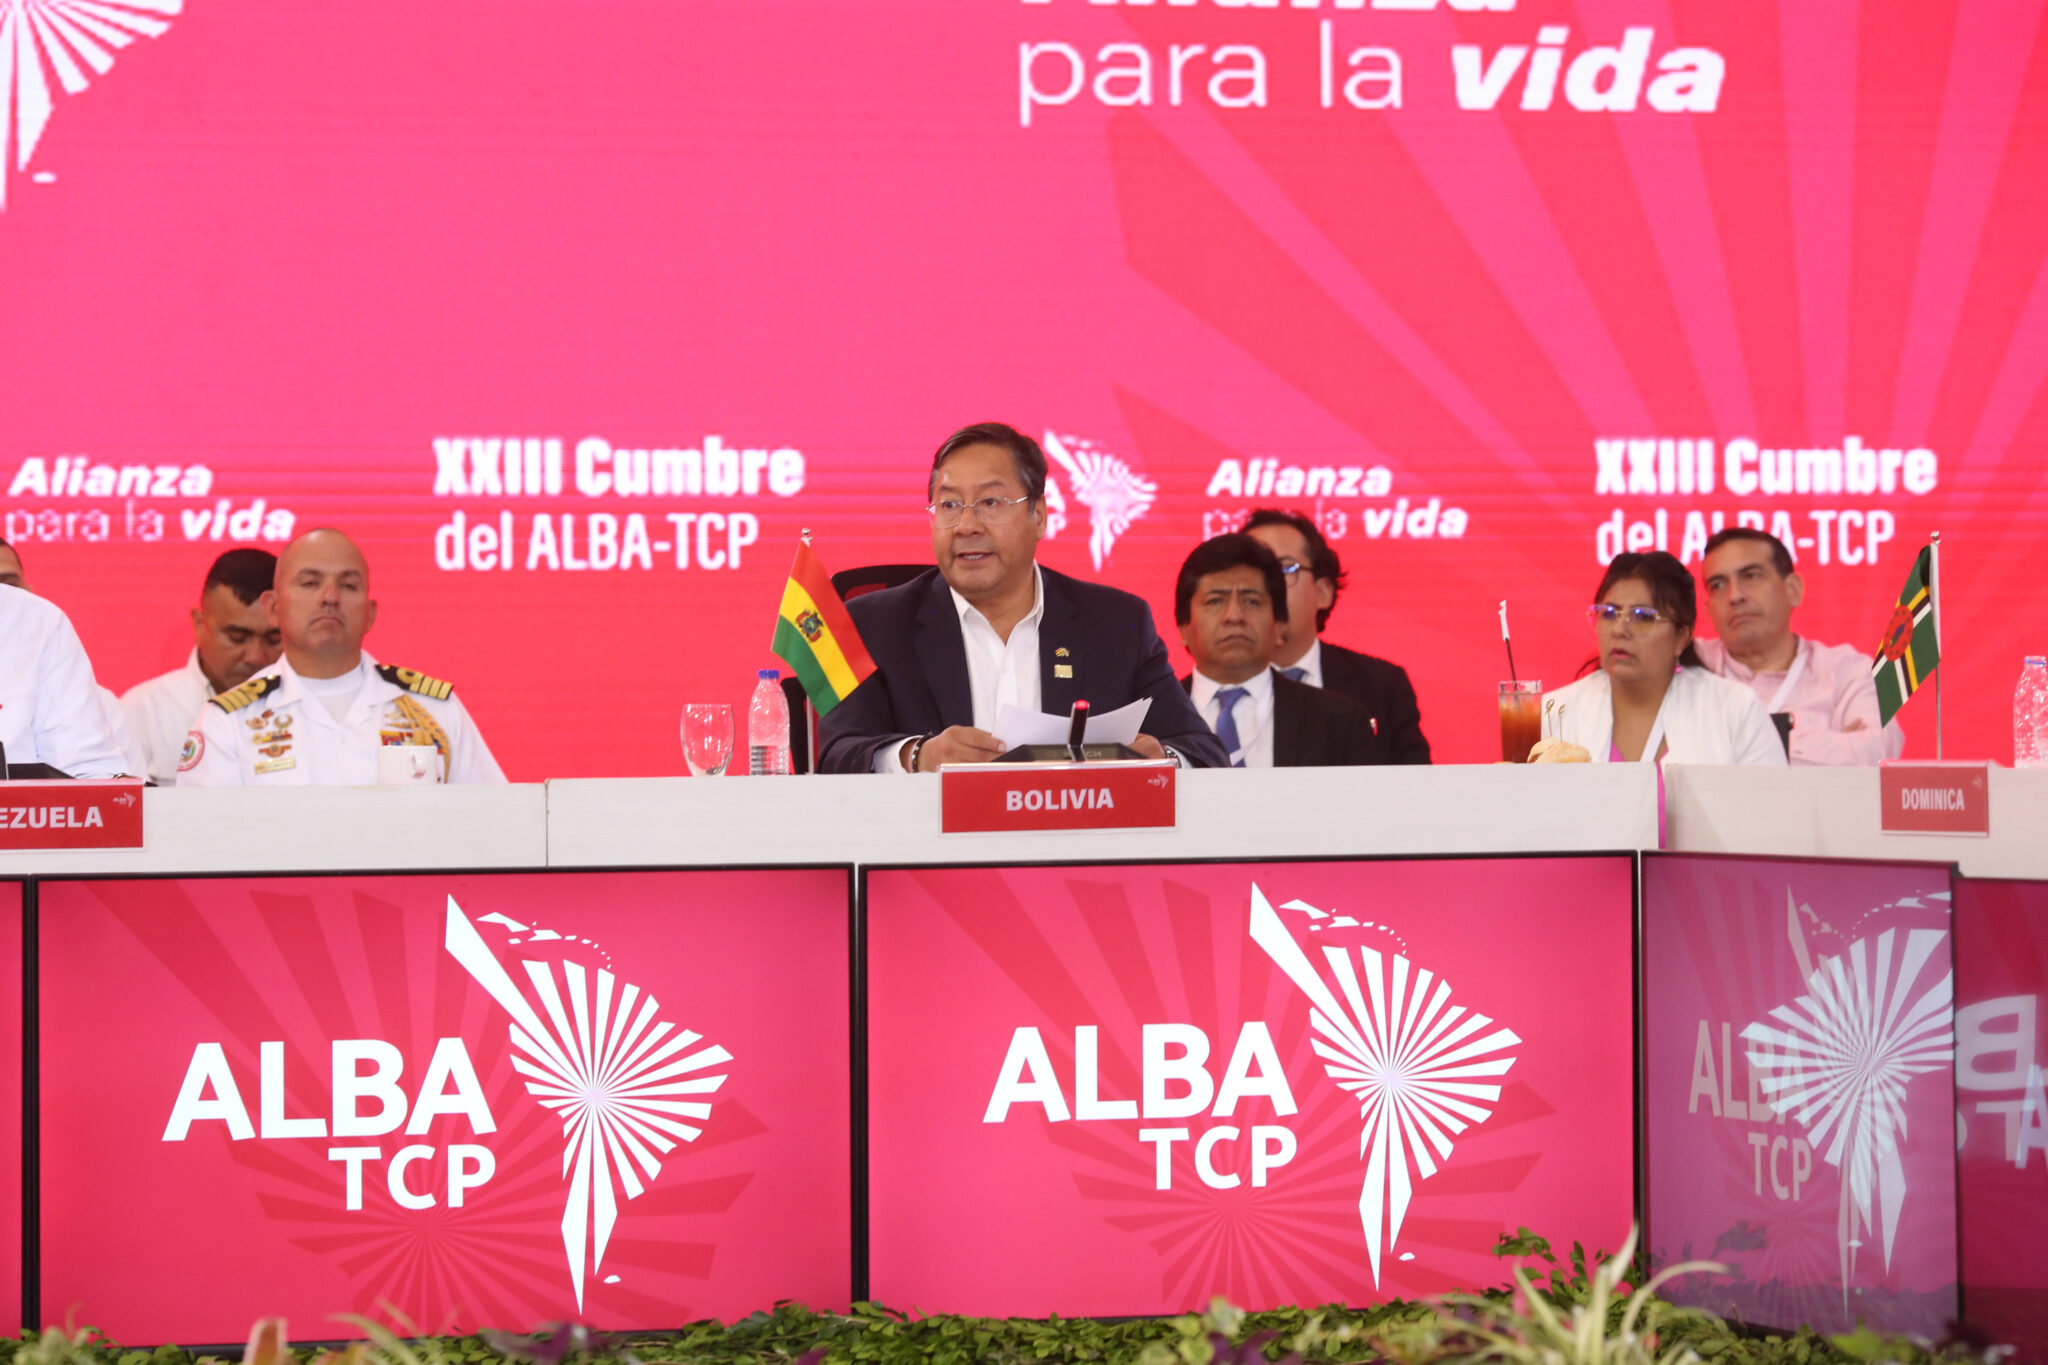 Bolivia invoca una acción firme del ALBA-TCP frente al genocidio en Gaza